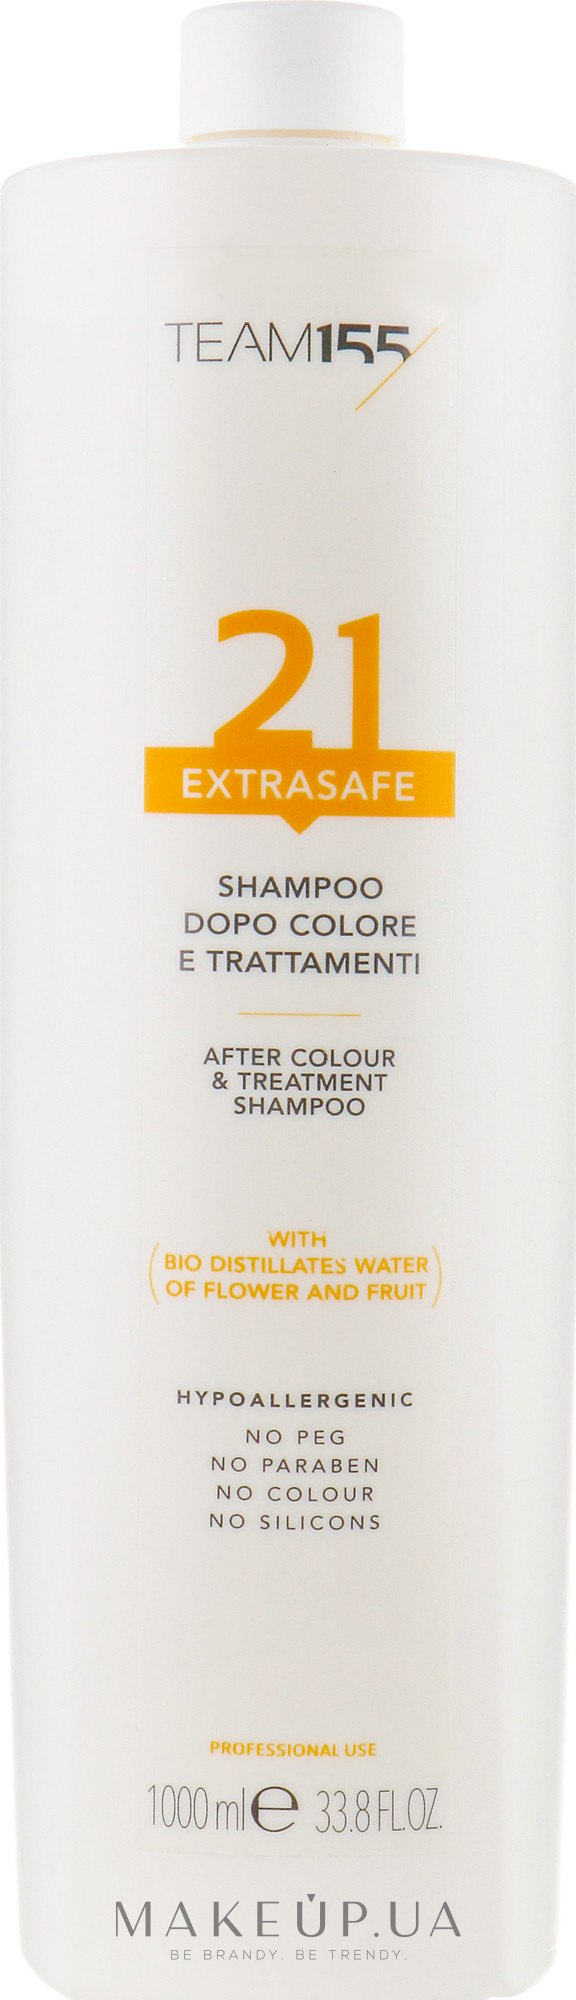 Шампунь для нанесення після фарбування та технічних процедур - Team 155 ExtraSafe 21 Shampoo — фото 1000ml